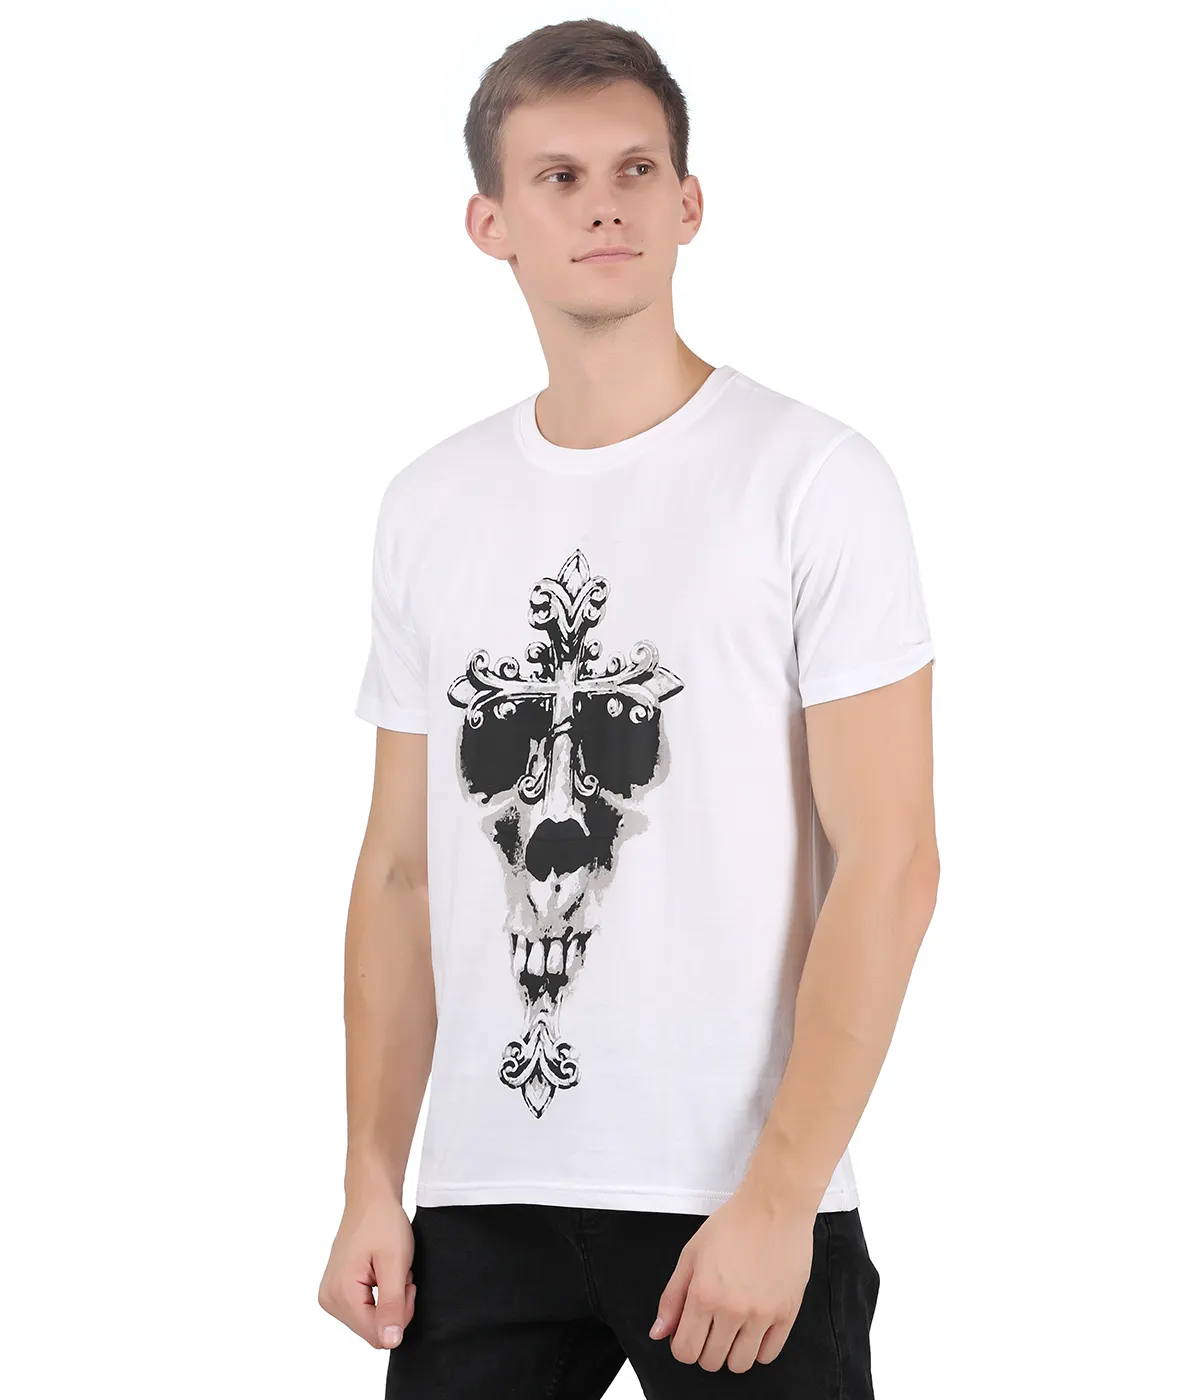 100% Cotton White Custom Printed T-Shirt Shirts For Men Mens Tshirts Blank Wholesale T Shirt Tshirt Printing Plain T-Shirts